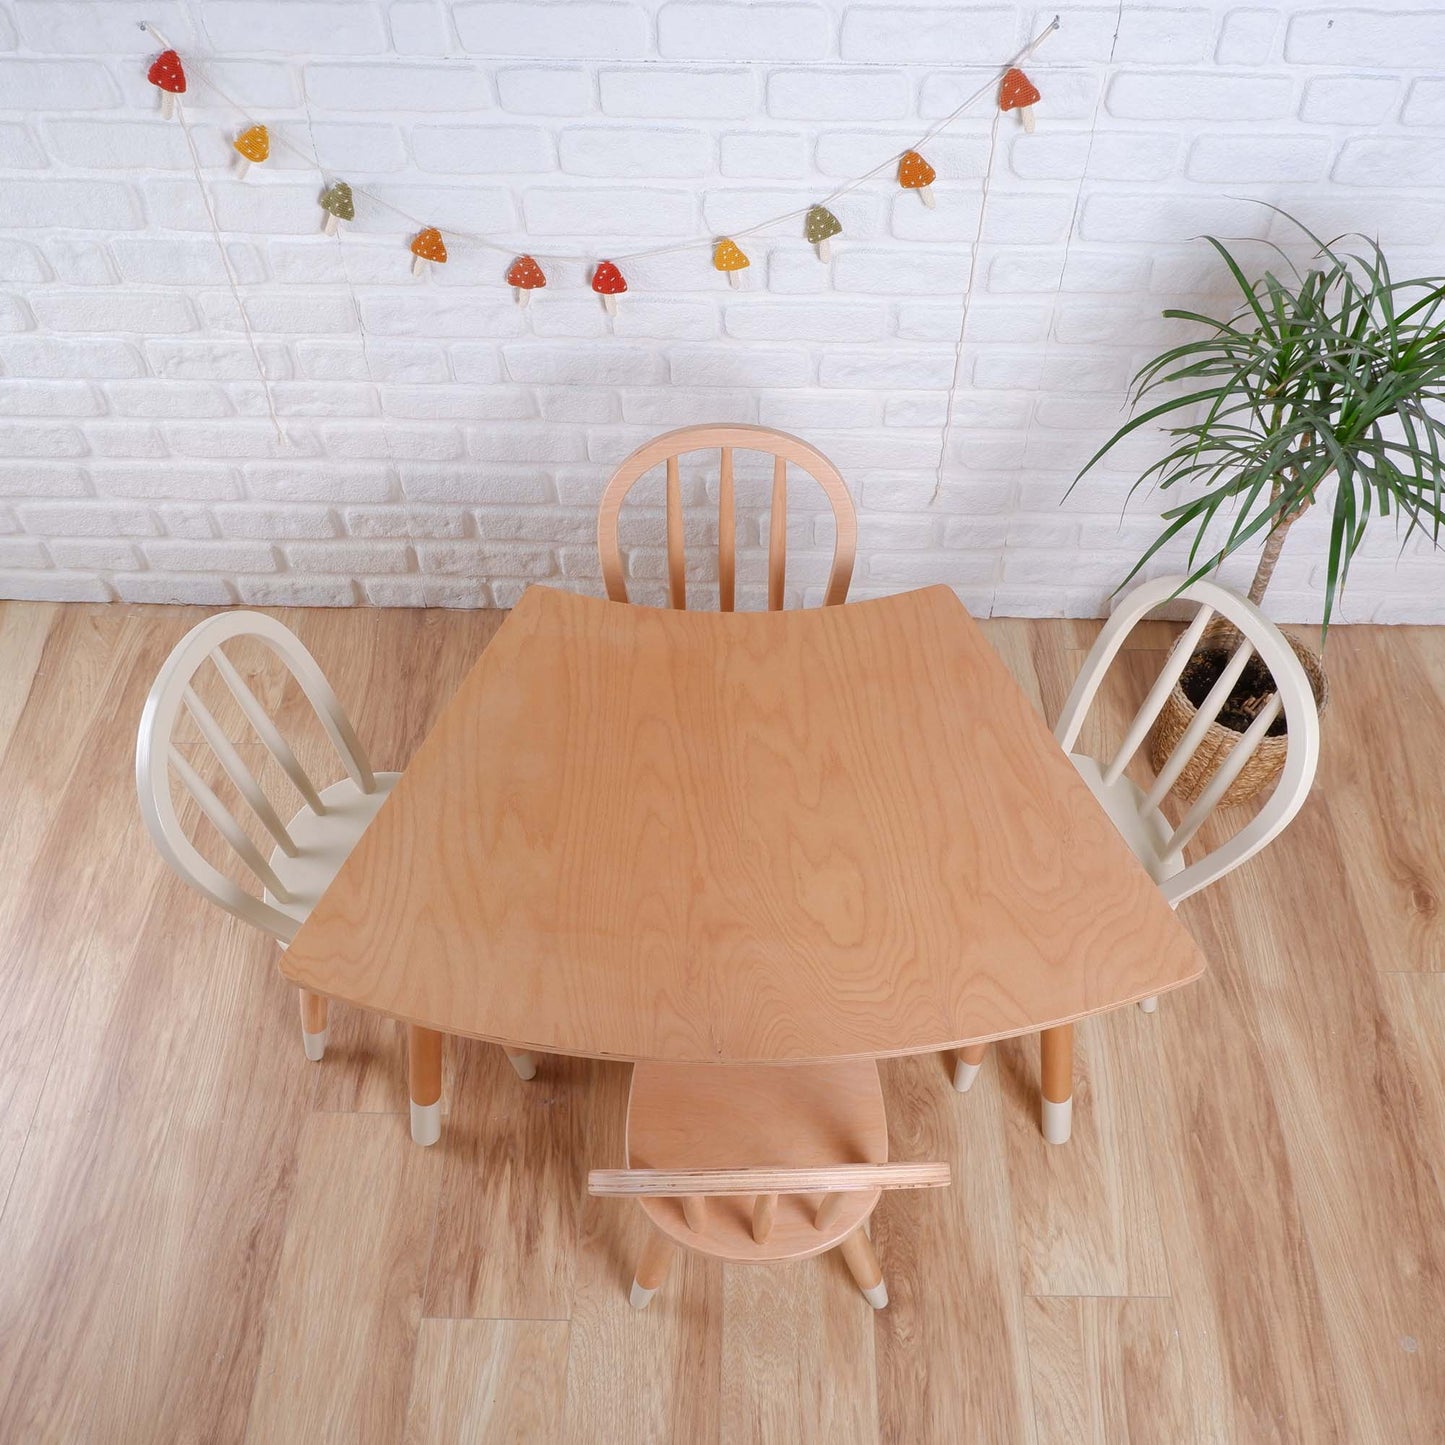 Ahşap Çocuk Masası, Çocuk Sandalyesi ve Çocuk Tezgahı Takımı Özelleştirilebilir